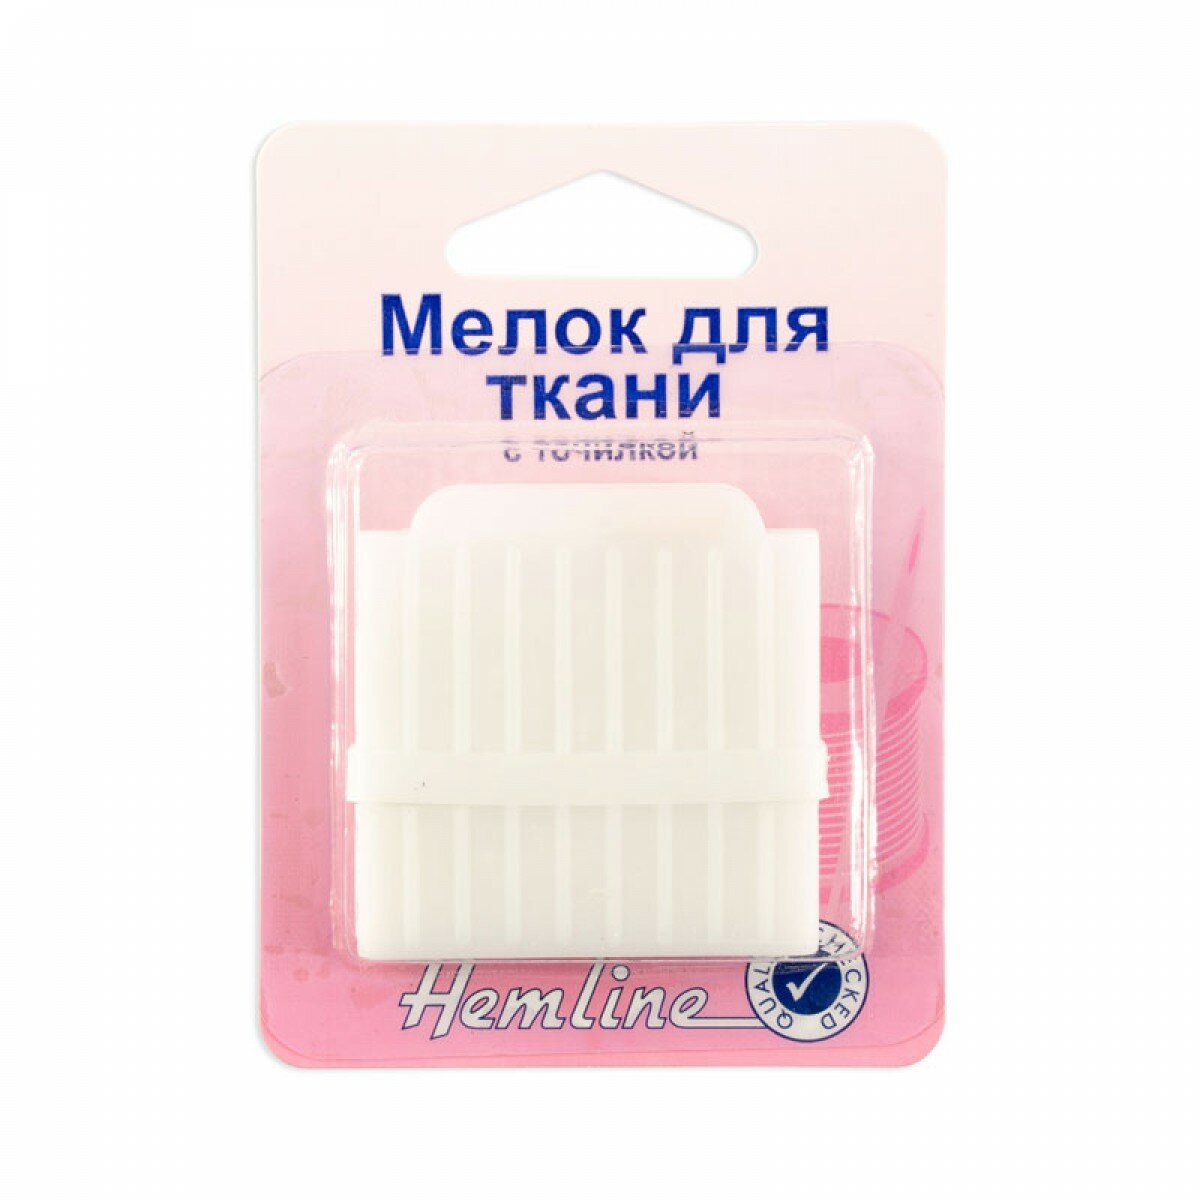 Мелок для ткани c точилкой в пластиковом корпусе белый HEMLINE 246